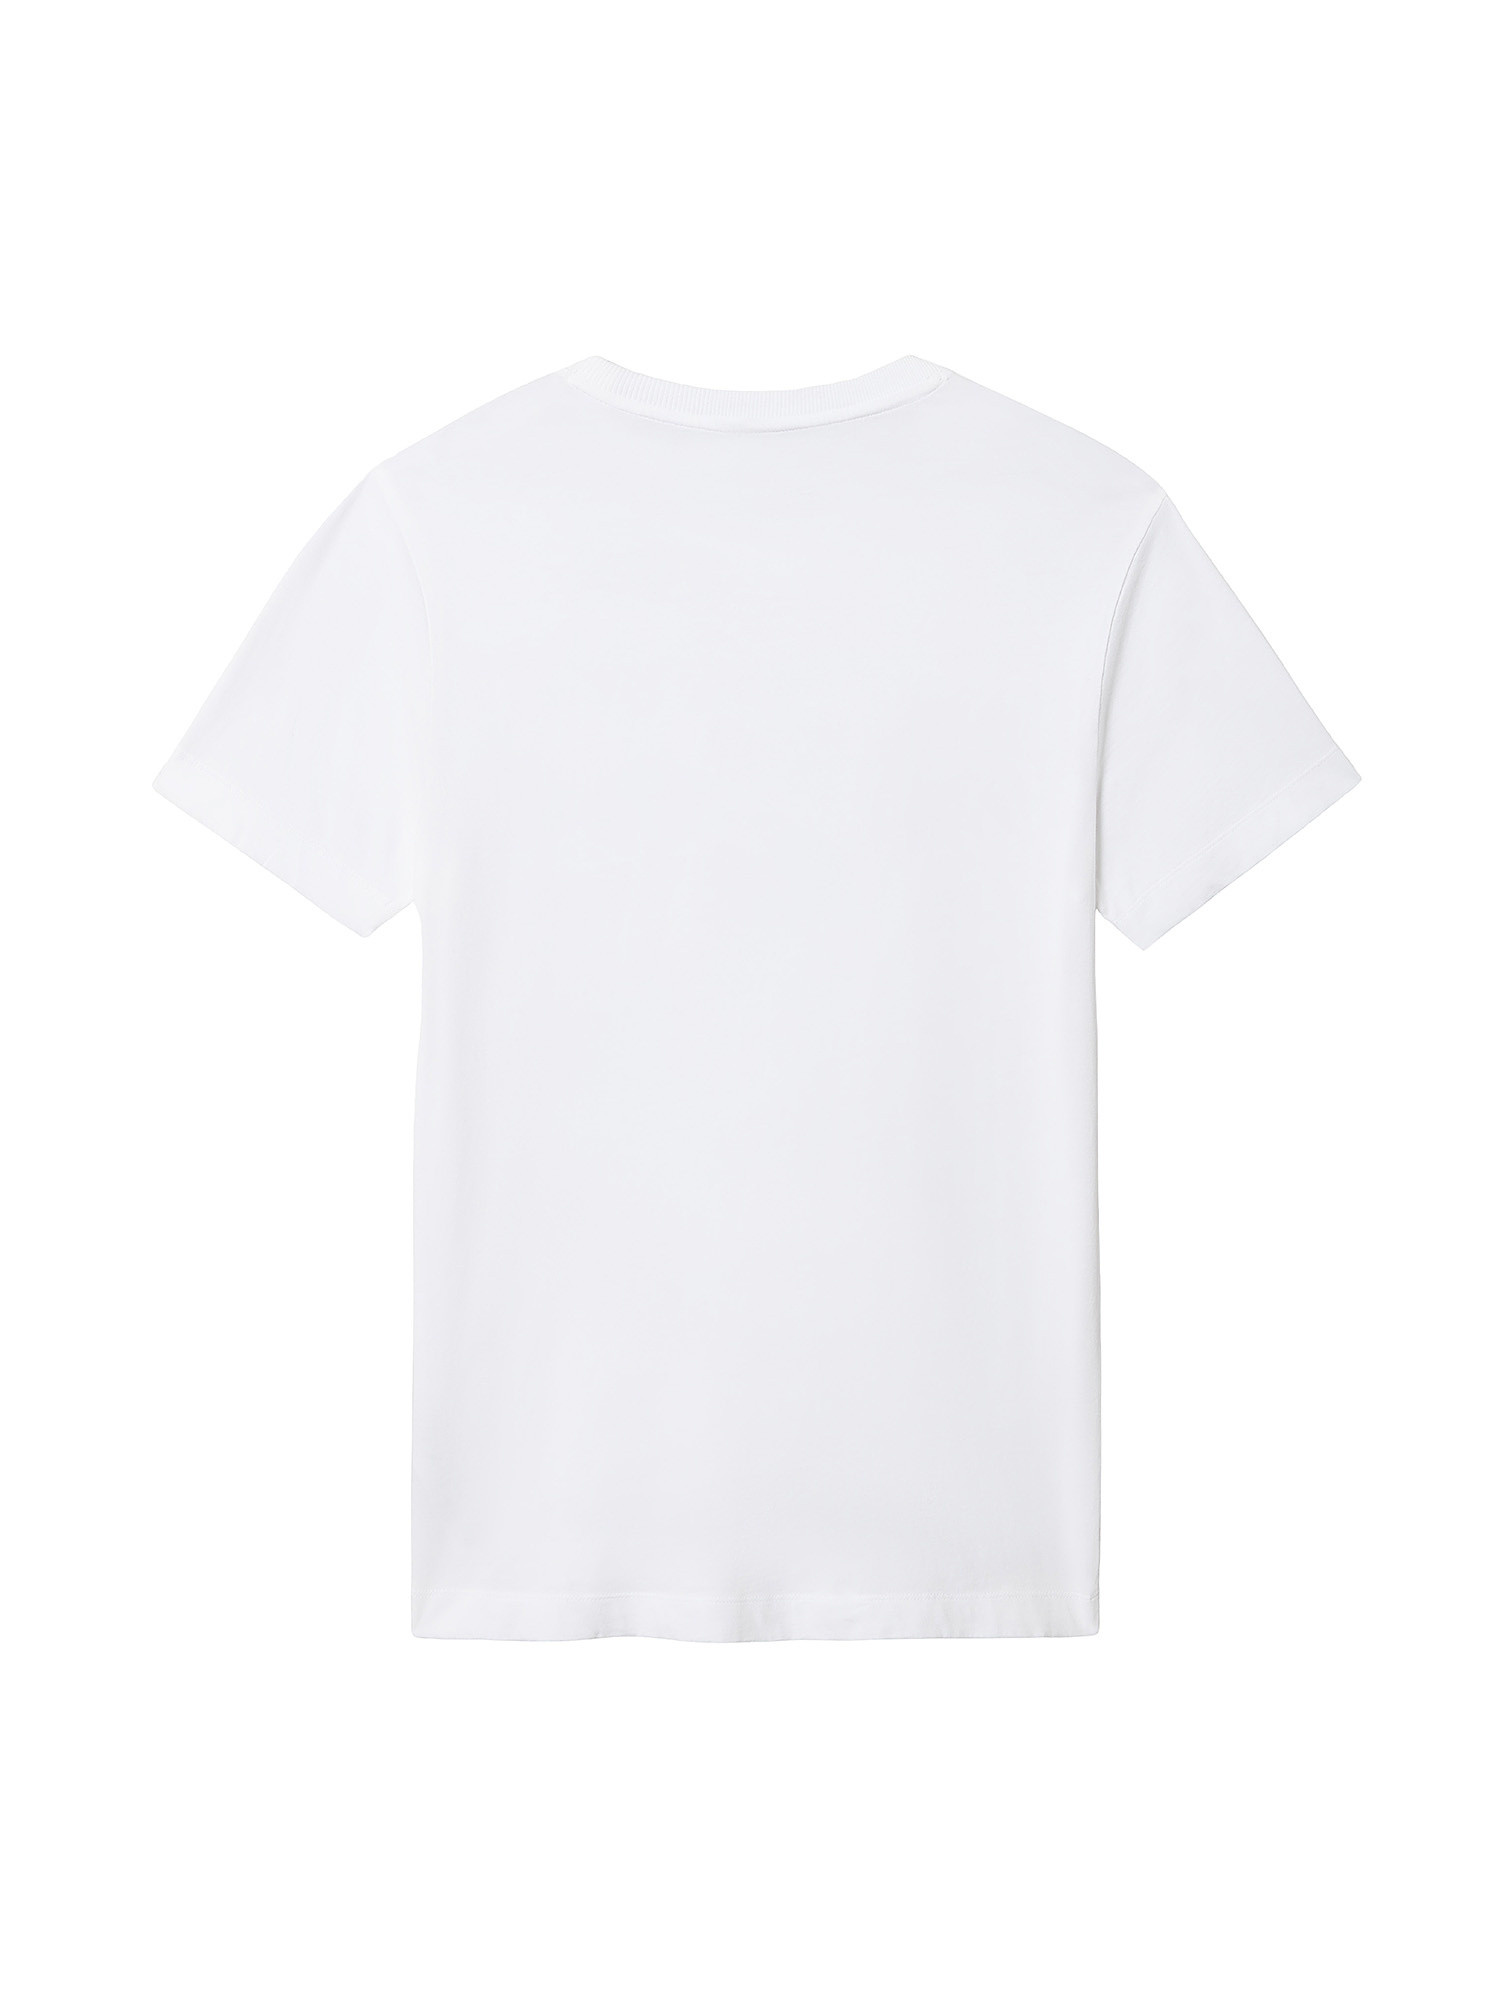 Short Sleeve T-Shirt Ayas, White, large image number 1